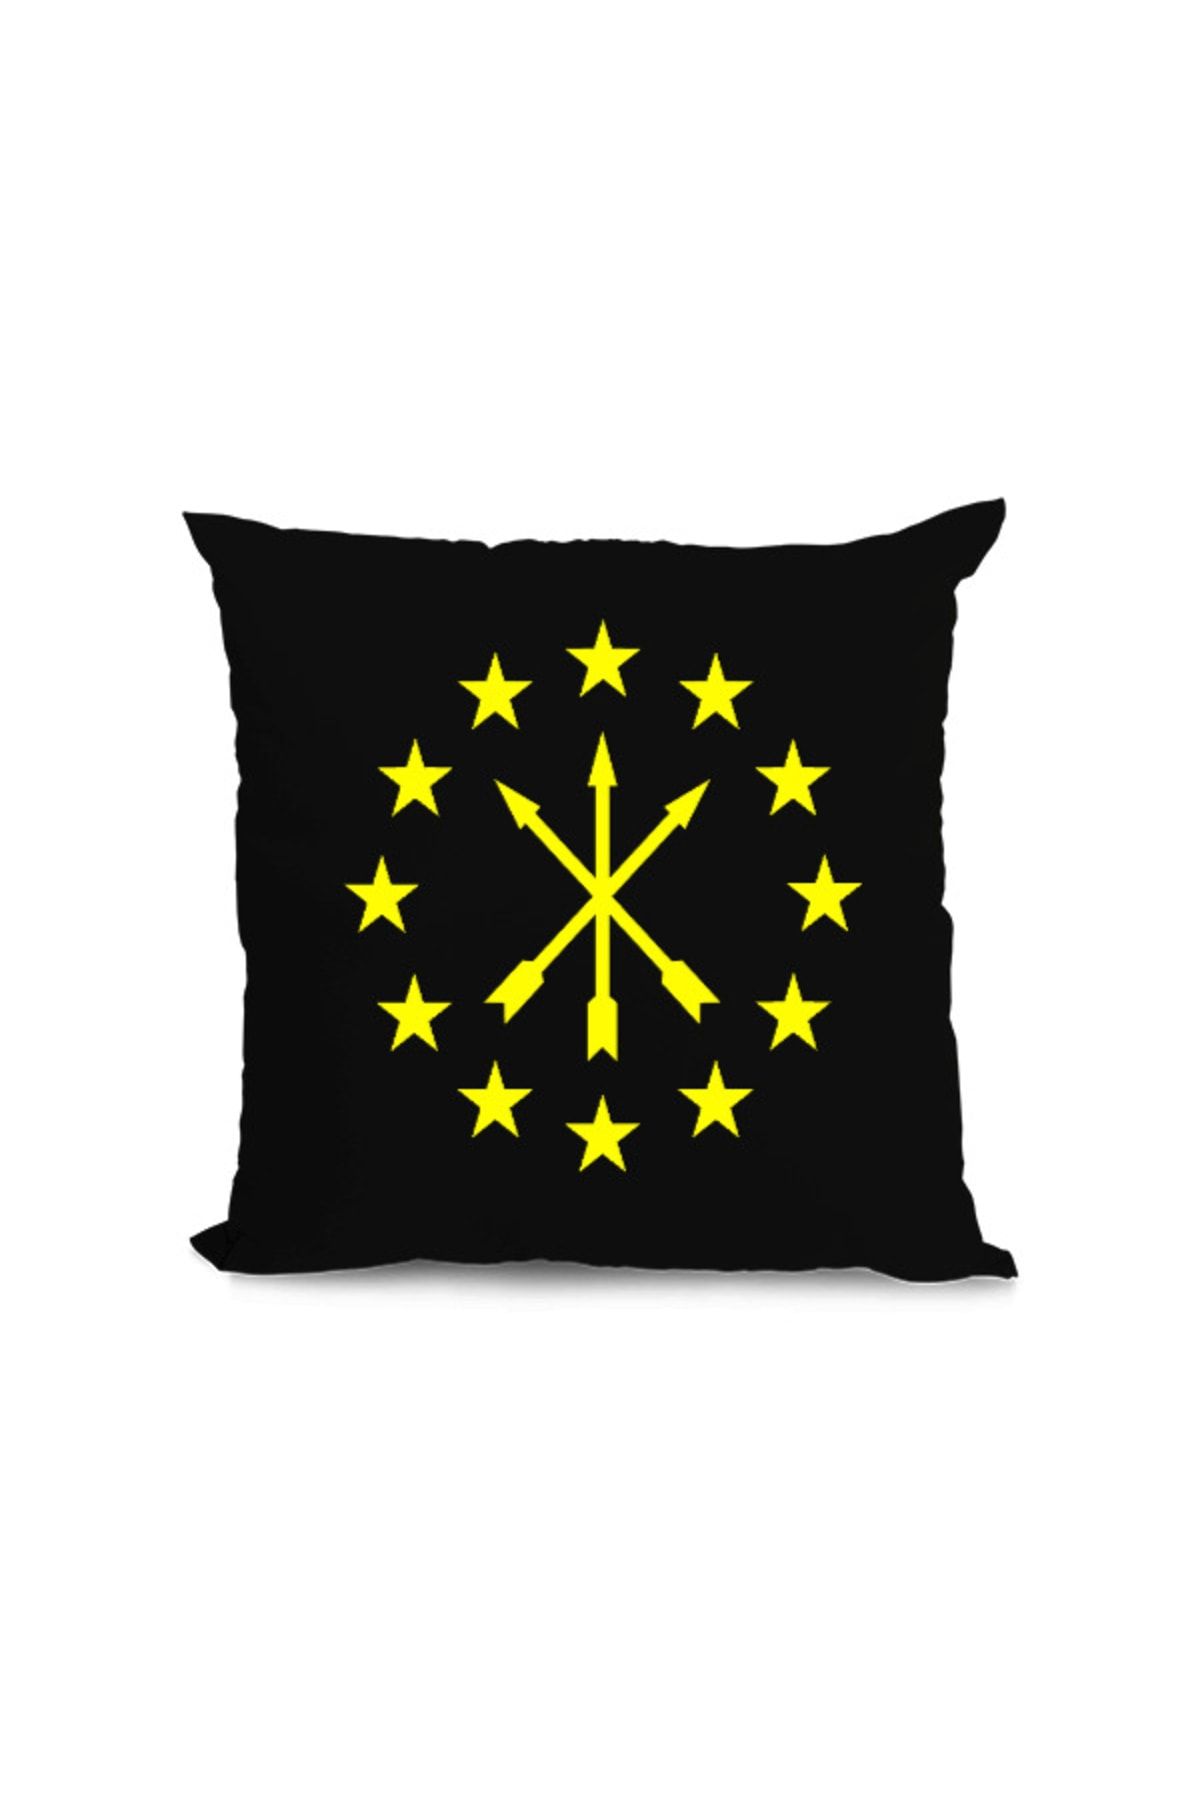 Tisho Çerkes Bayrağı, Adiga Bayrağı,çerkes Logosu. Kare Yastık